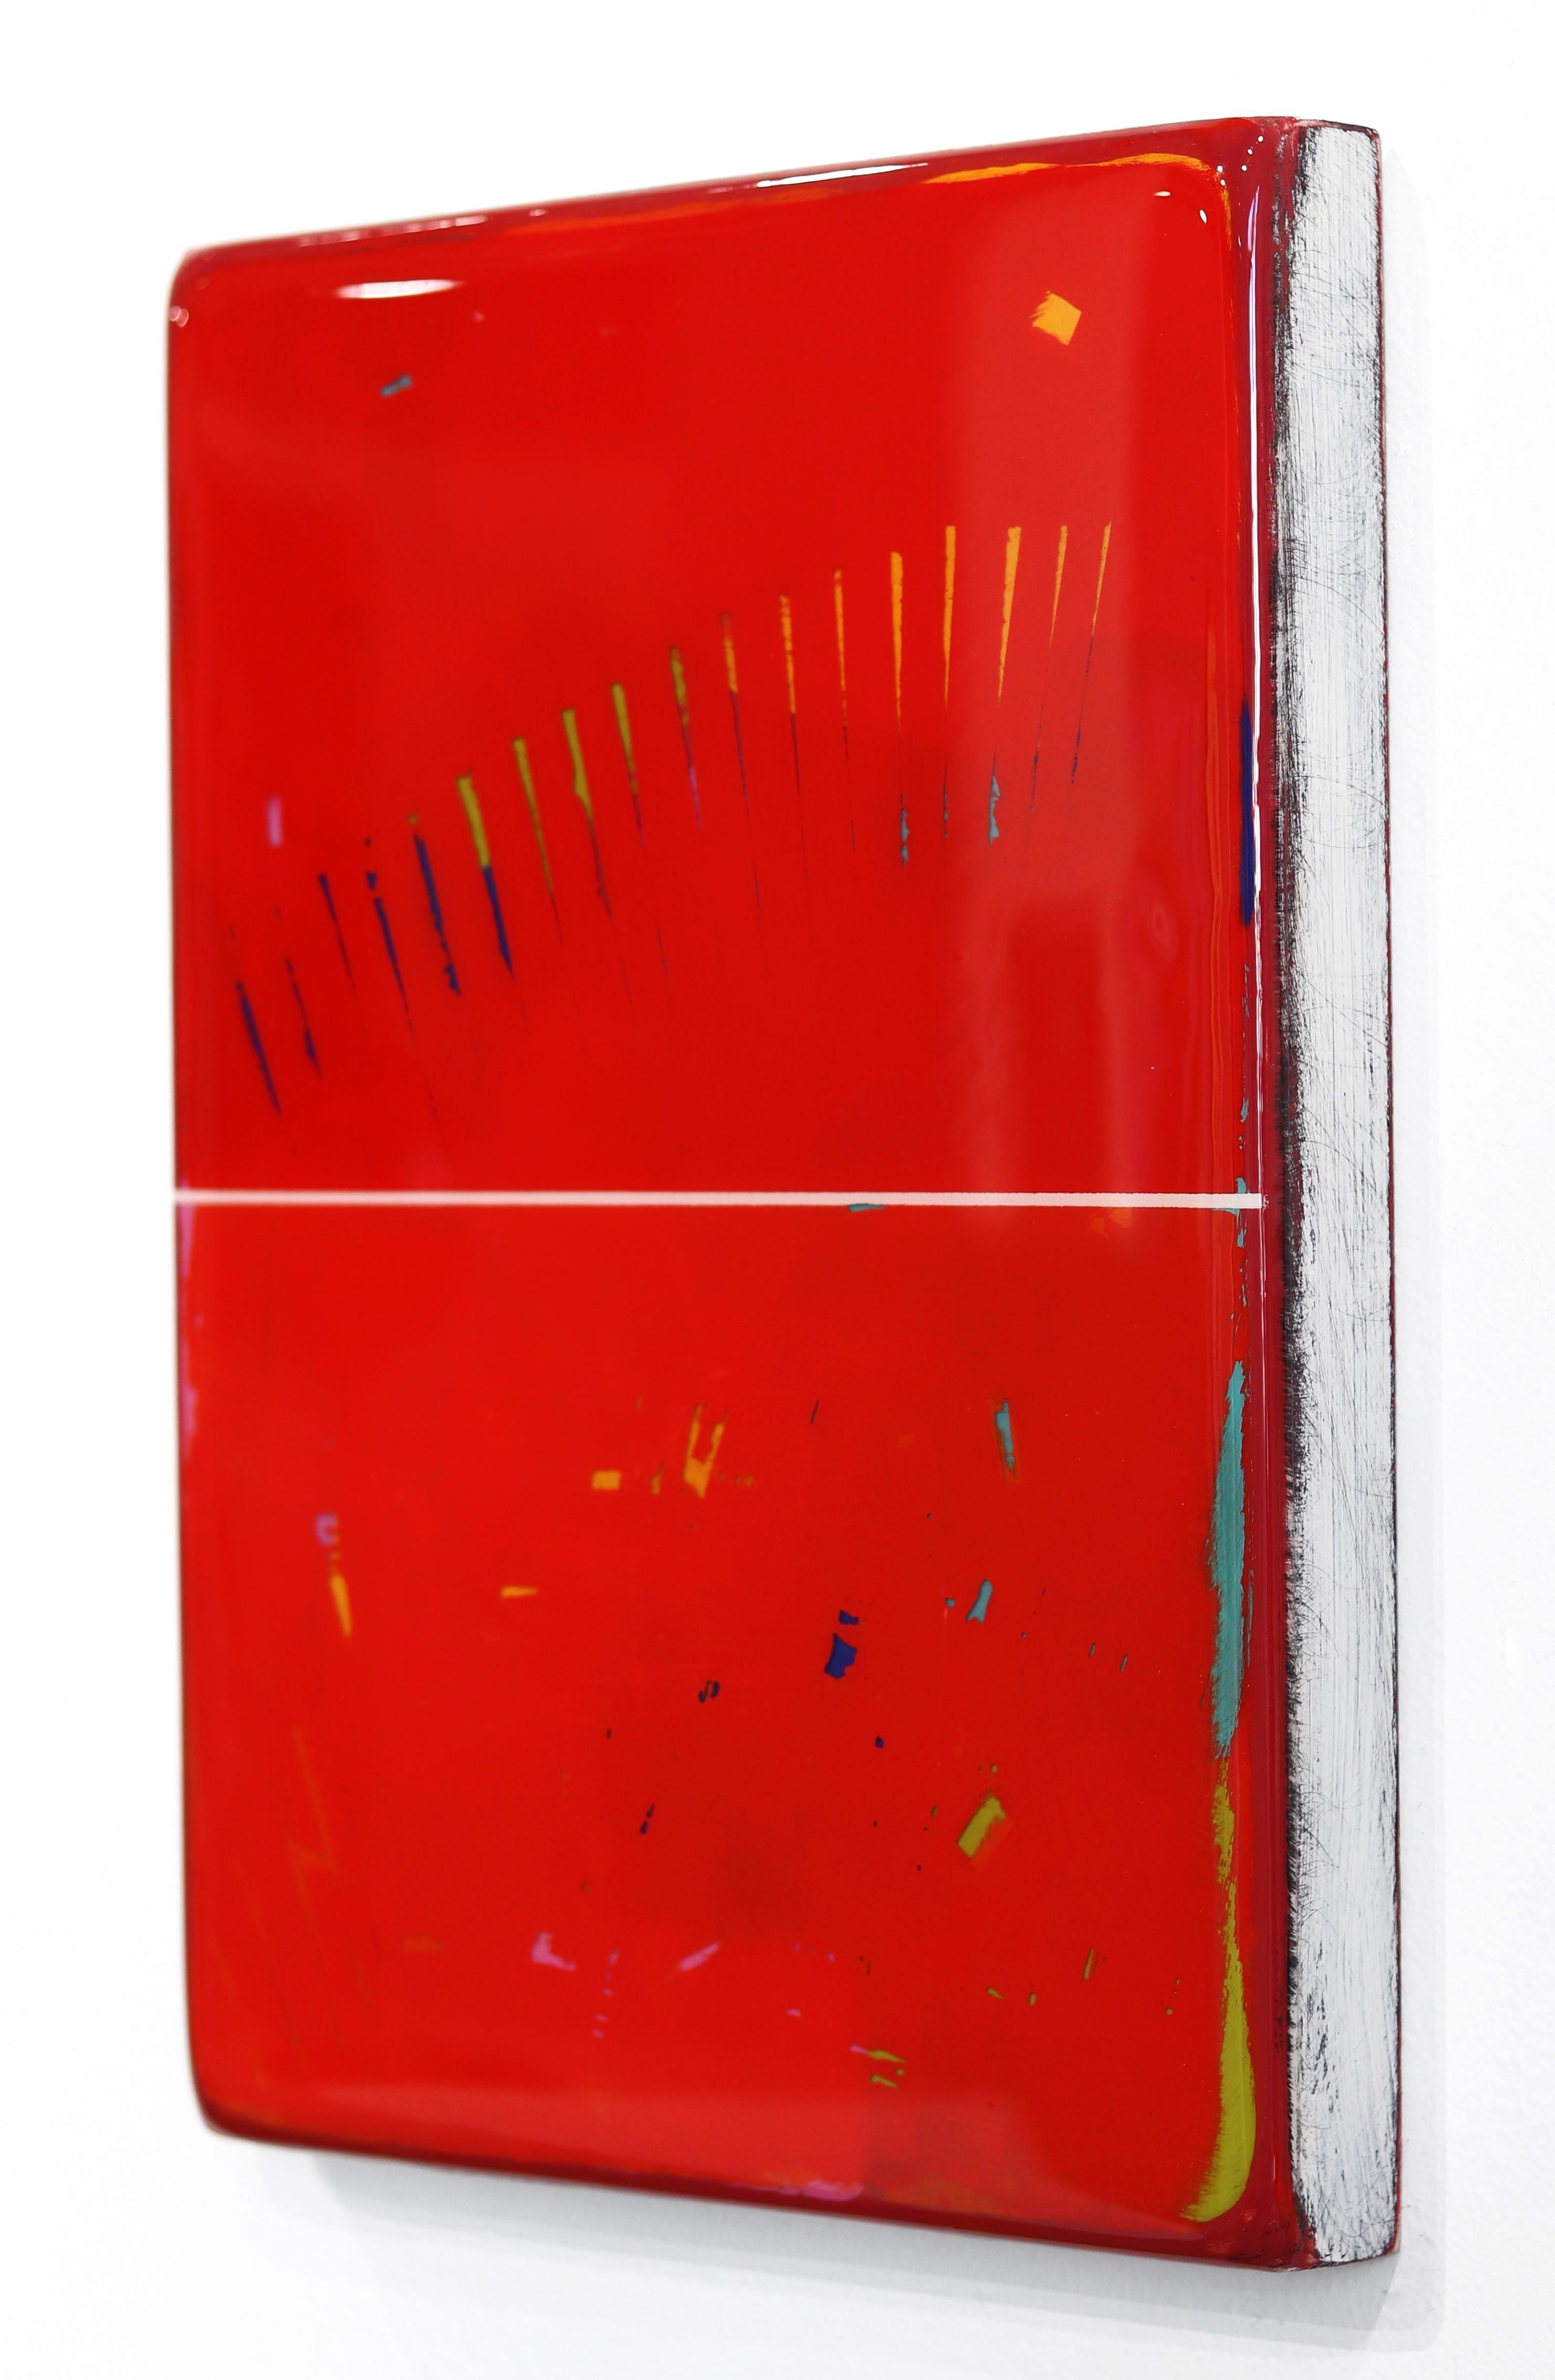 L'art mural minimaliste en techniques mixtes de Ricky Hunt est influencé par son passé tumultueux qui l'a conduit à un changement de paradigme dans sa créativité et sa vie. Il recouvre le panneau de bois de couches de peinture acrylique, en enlevant